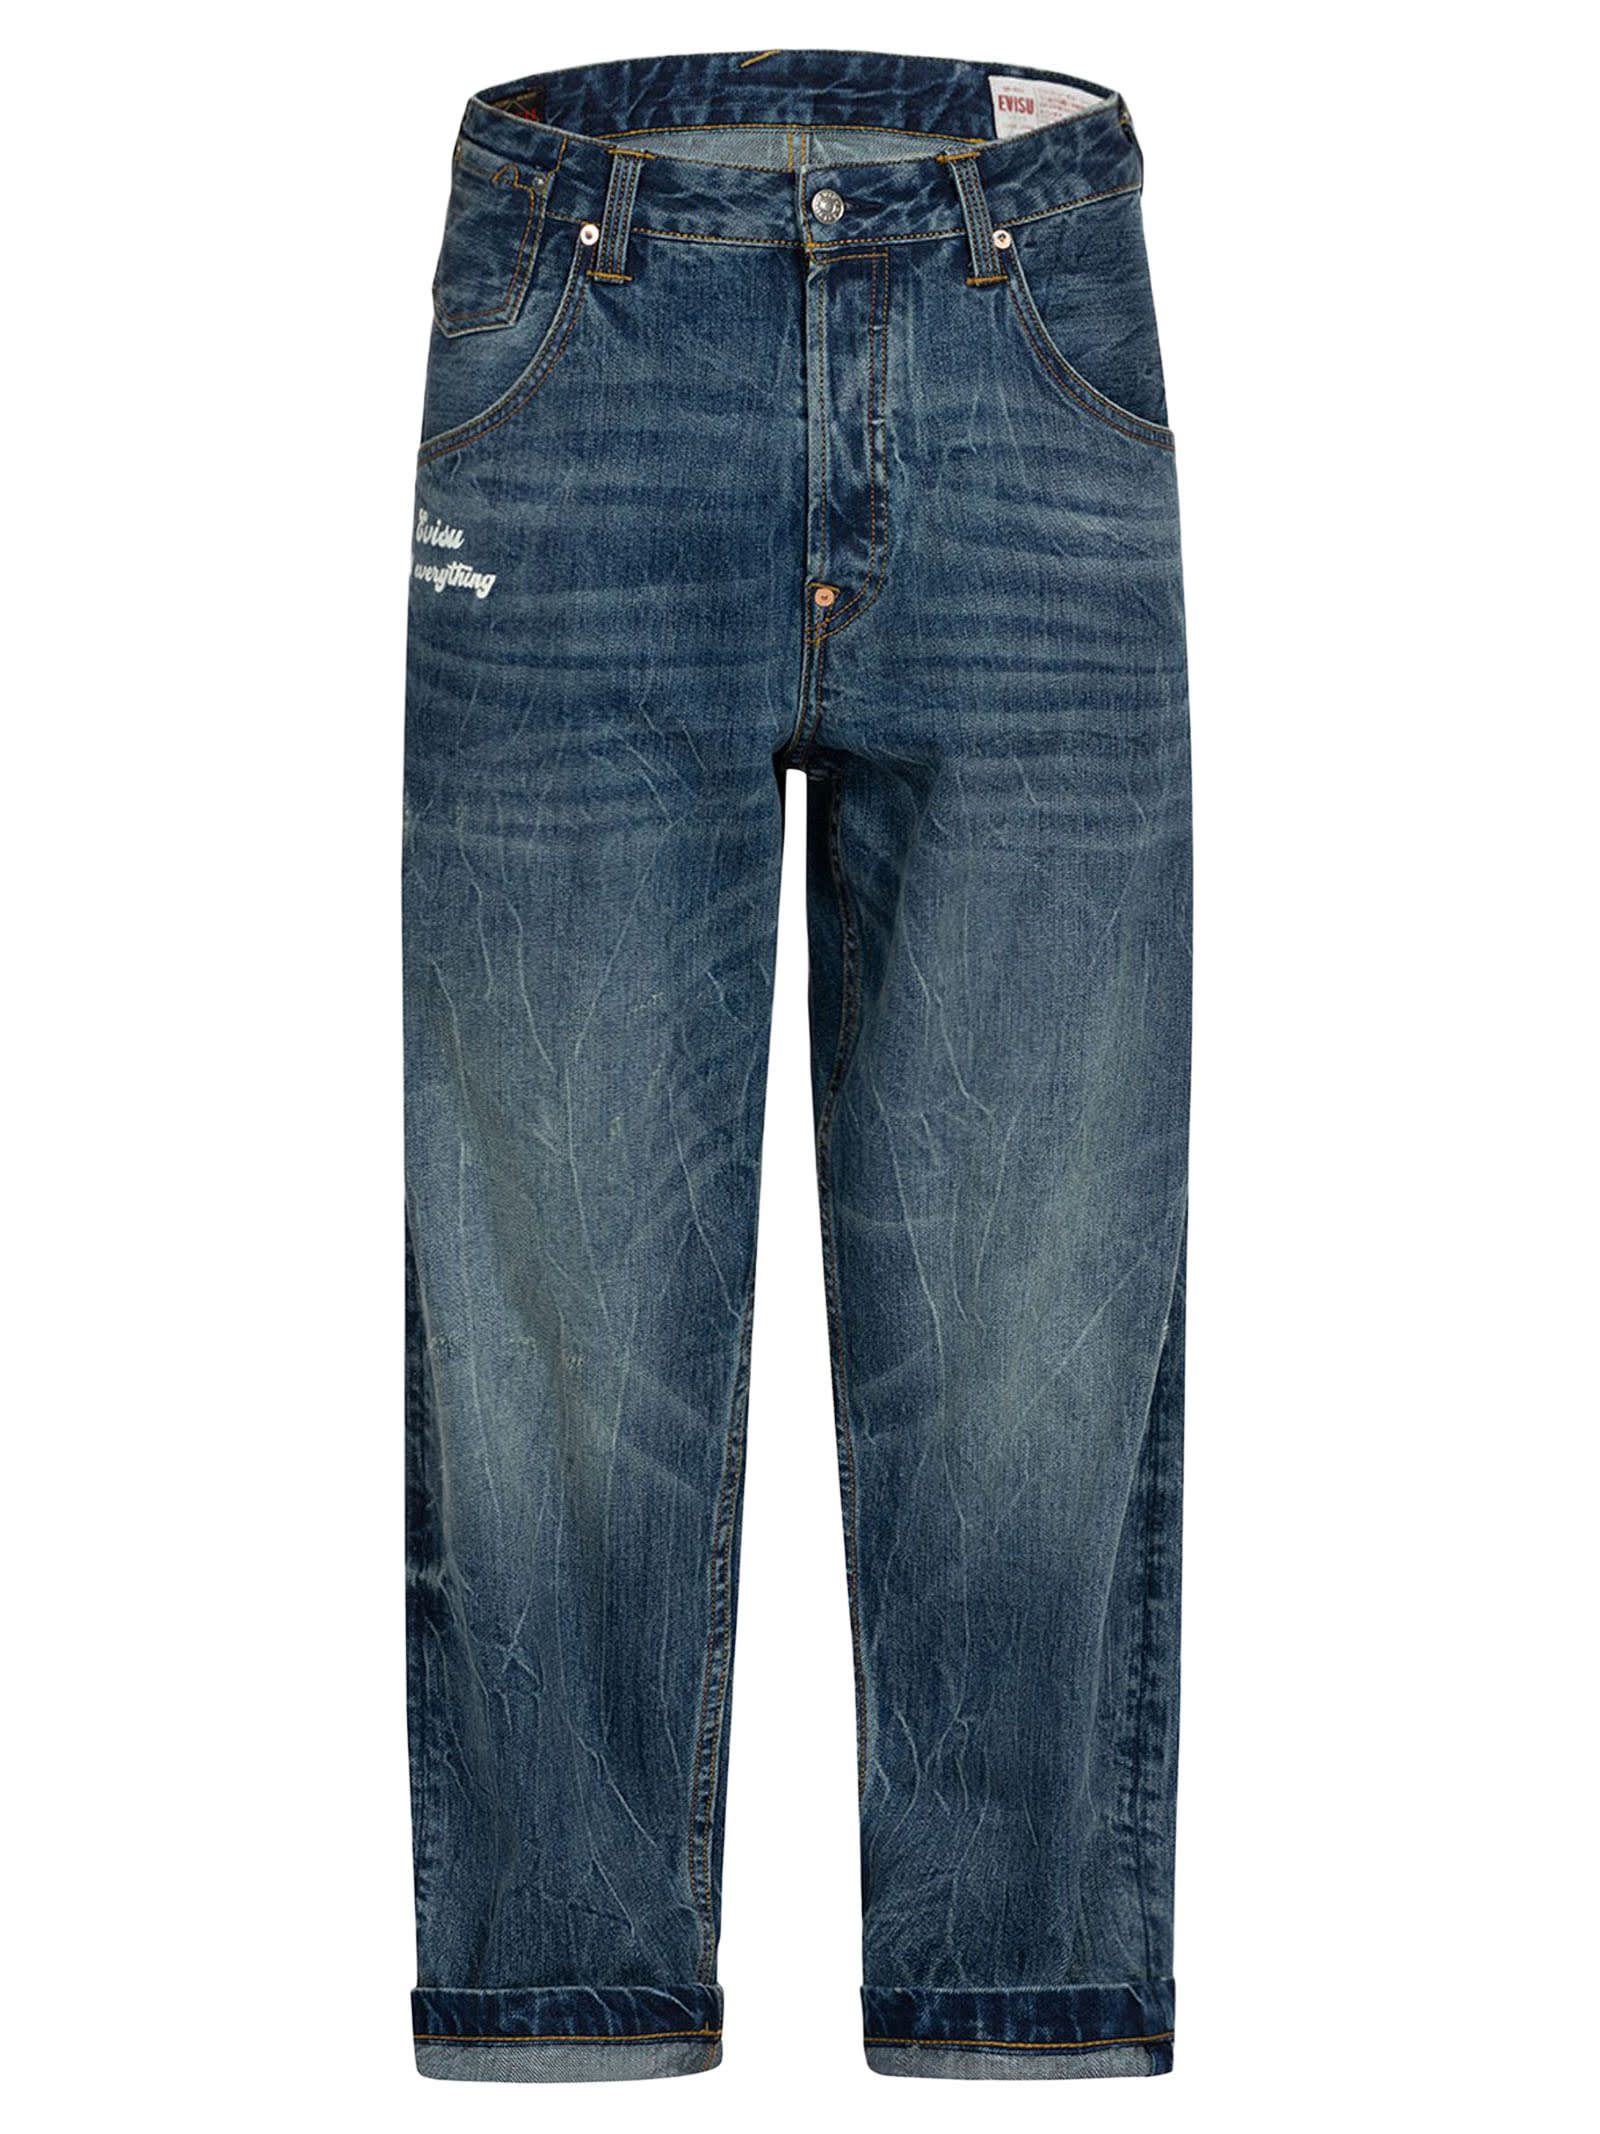 Shop Evisu Jeans Blue